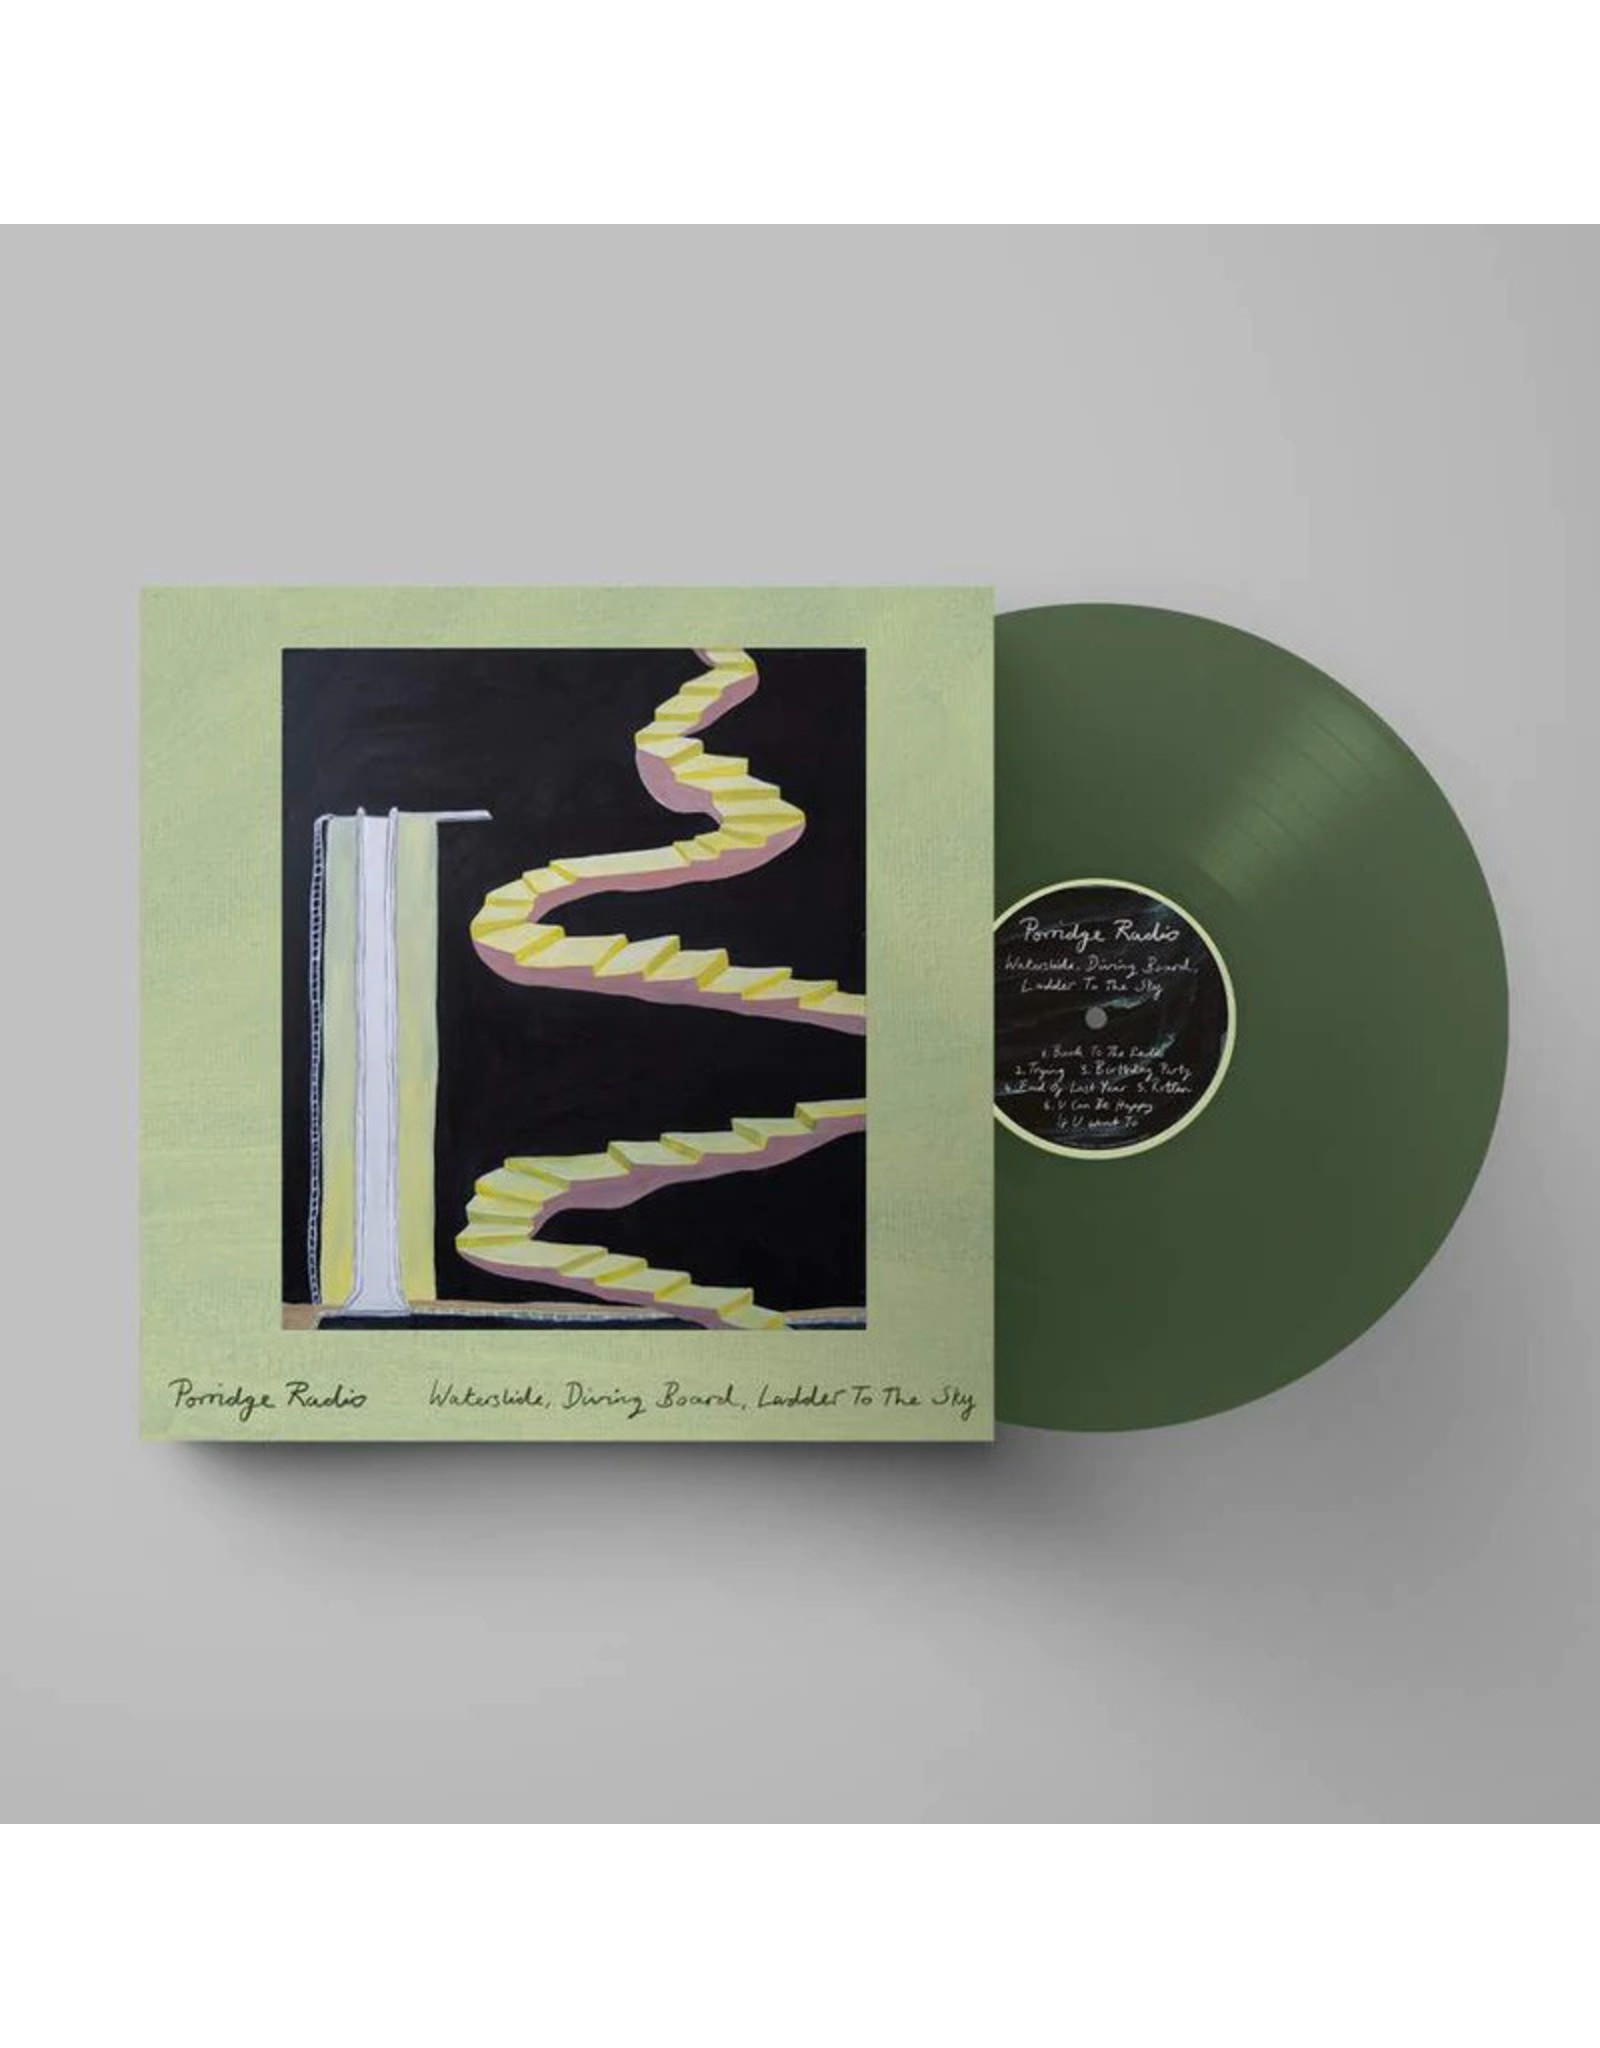 Porridge Radio - Waterslide, Diving Board, Ladder To The Sky (Exclusive Green Vinyl)